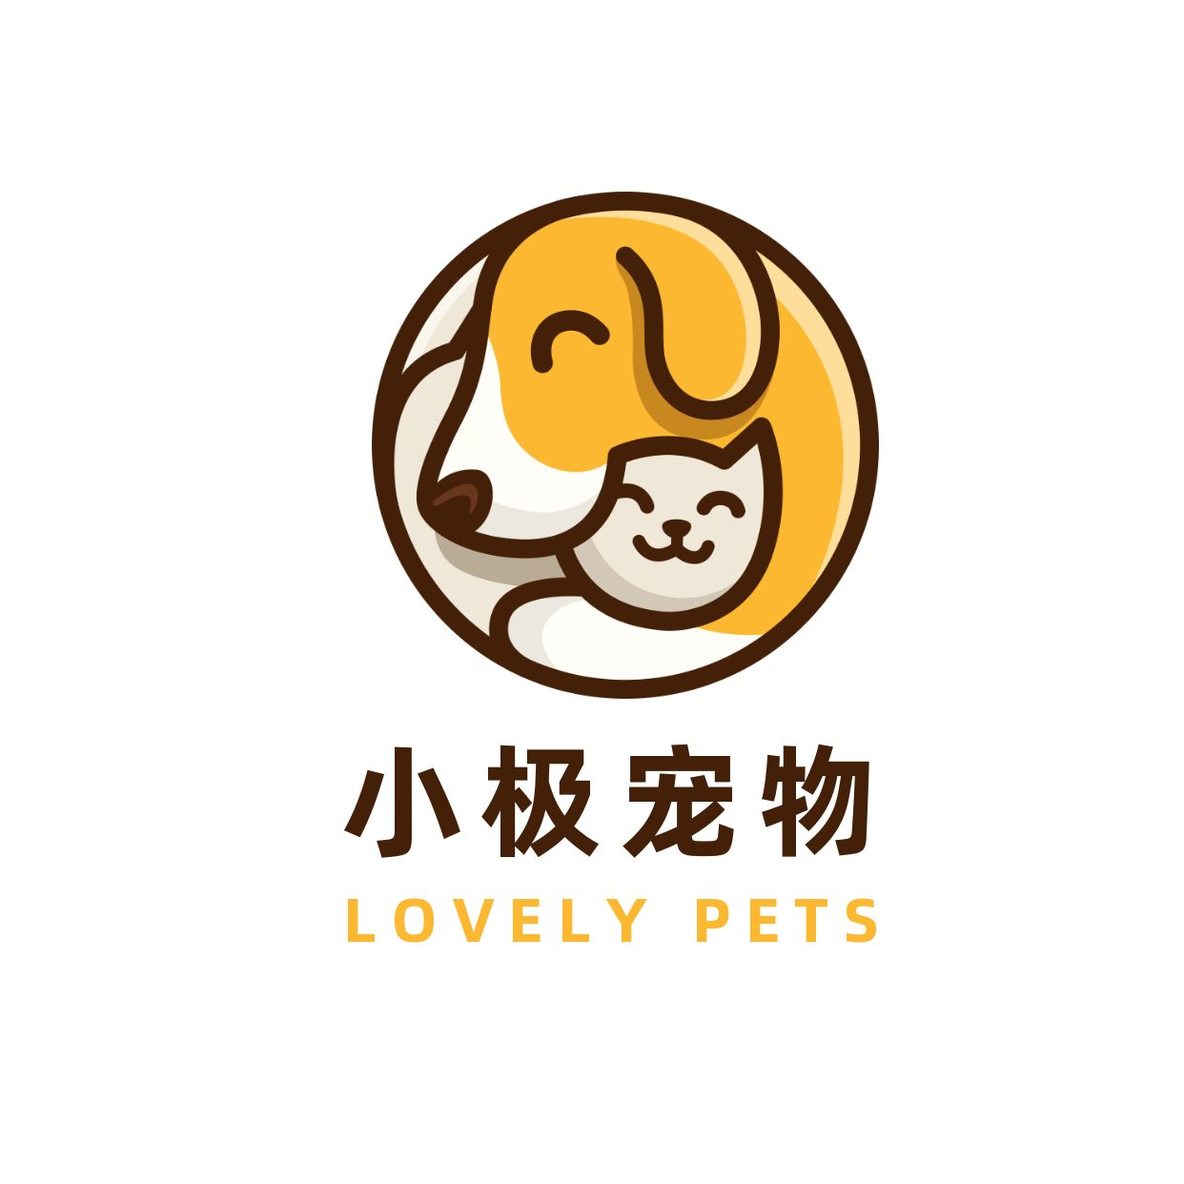 猫猫狗狗有爱宠物店logo